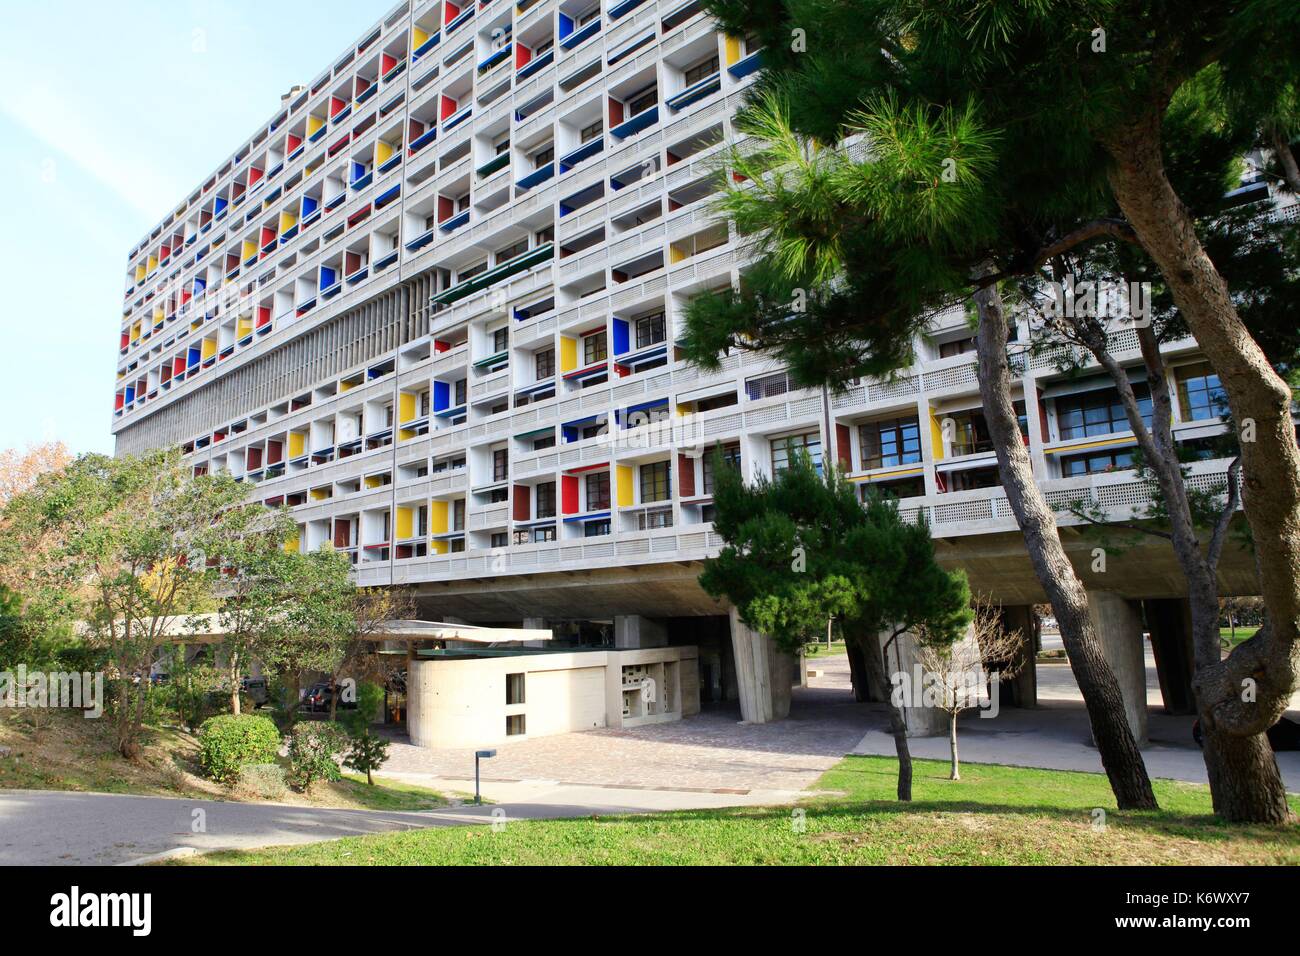 France, Bouches du Rhône, Marseille, l'oeuvre architecturale de Le Corbusier, inscrite au Patrimoine Mondial de l'UNESCO, 9ème arrondissement, la Cité radieuse de l'architecte Le Corbusier Banque D'Images